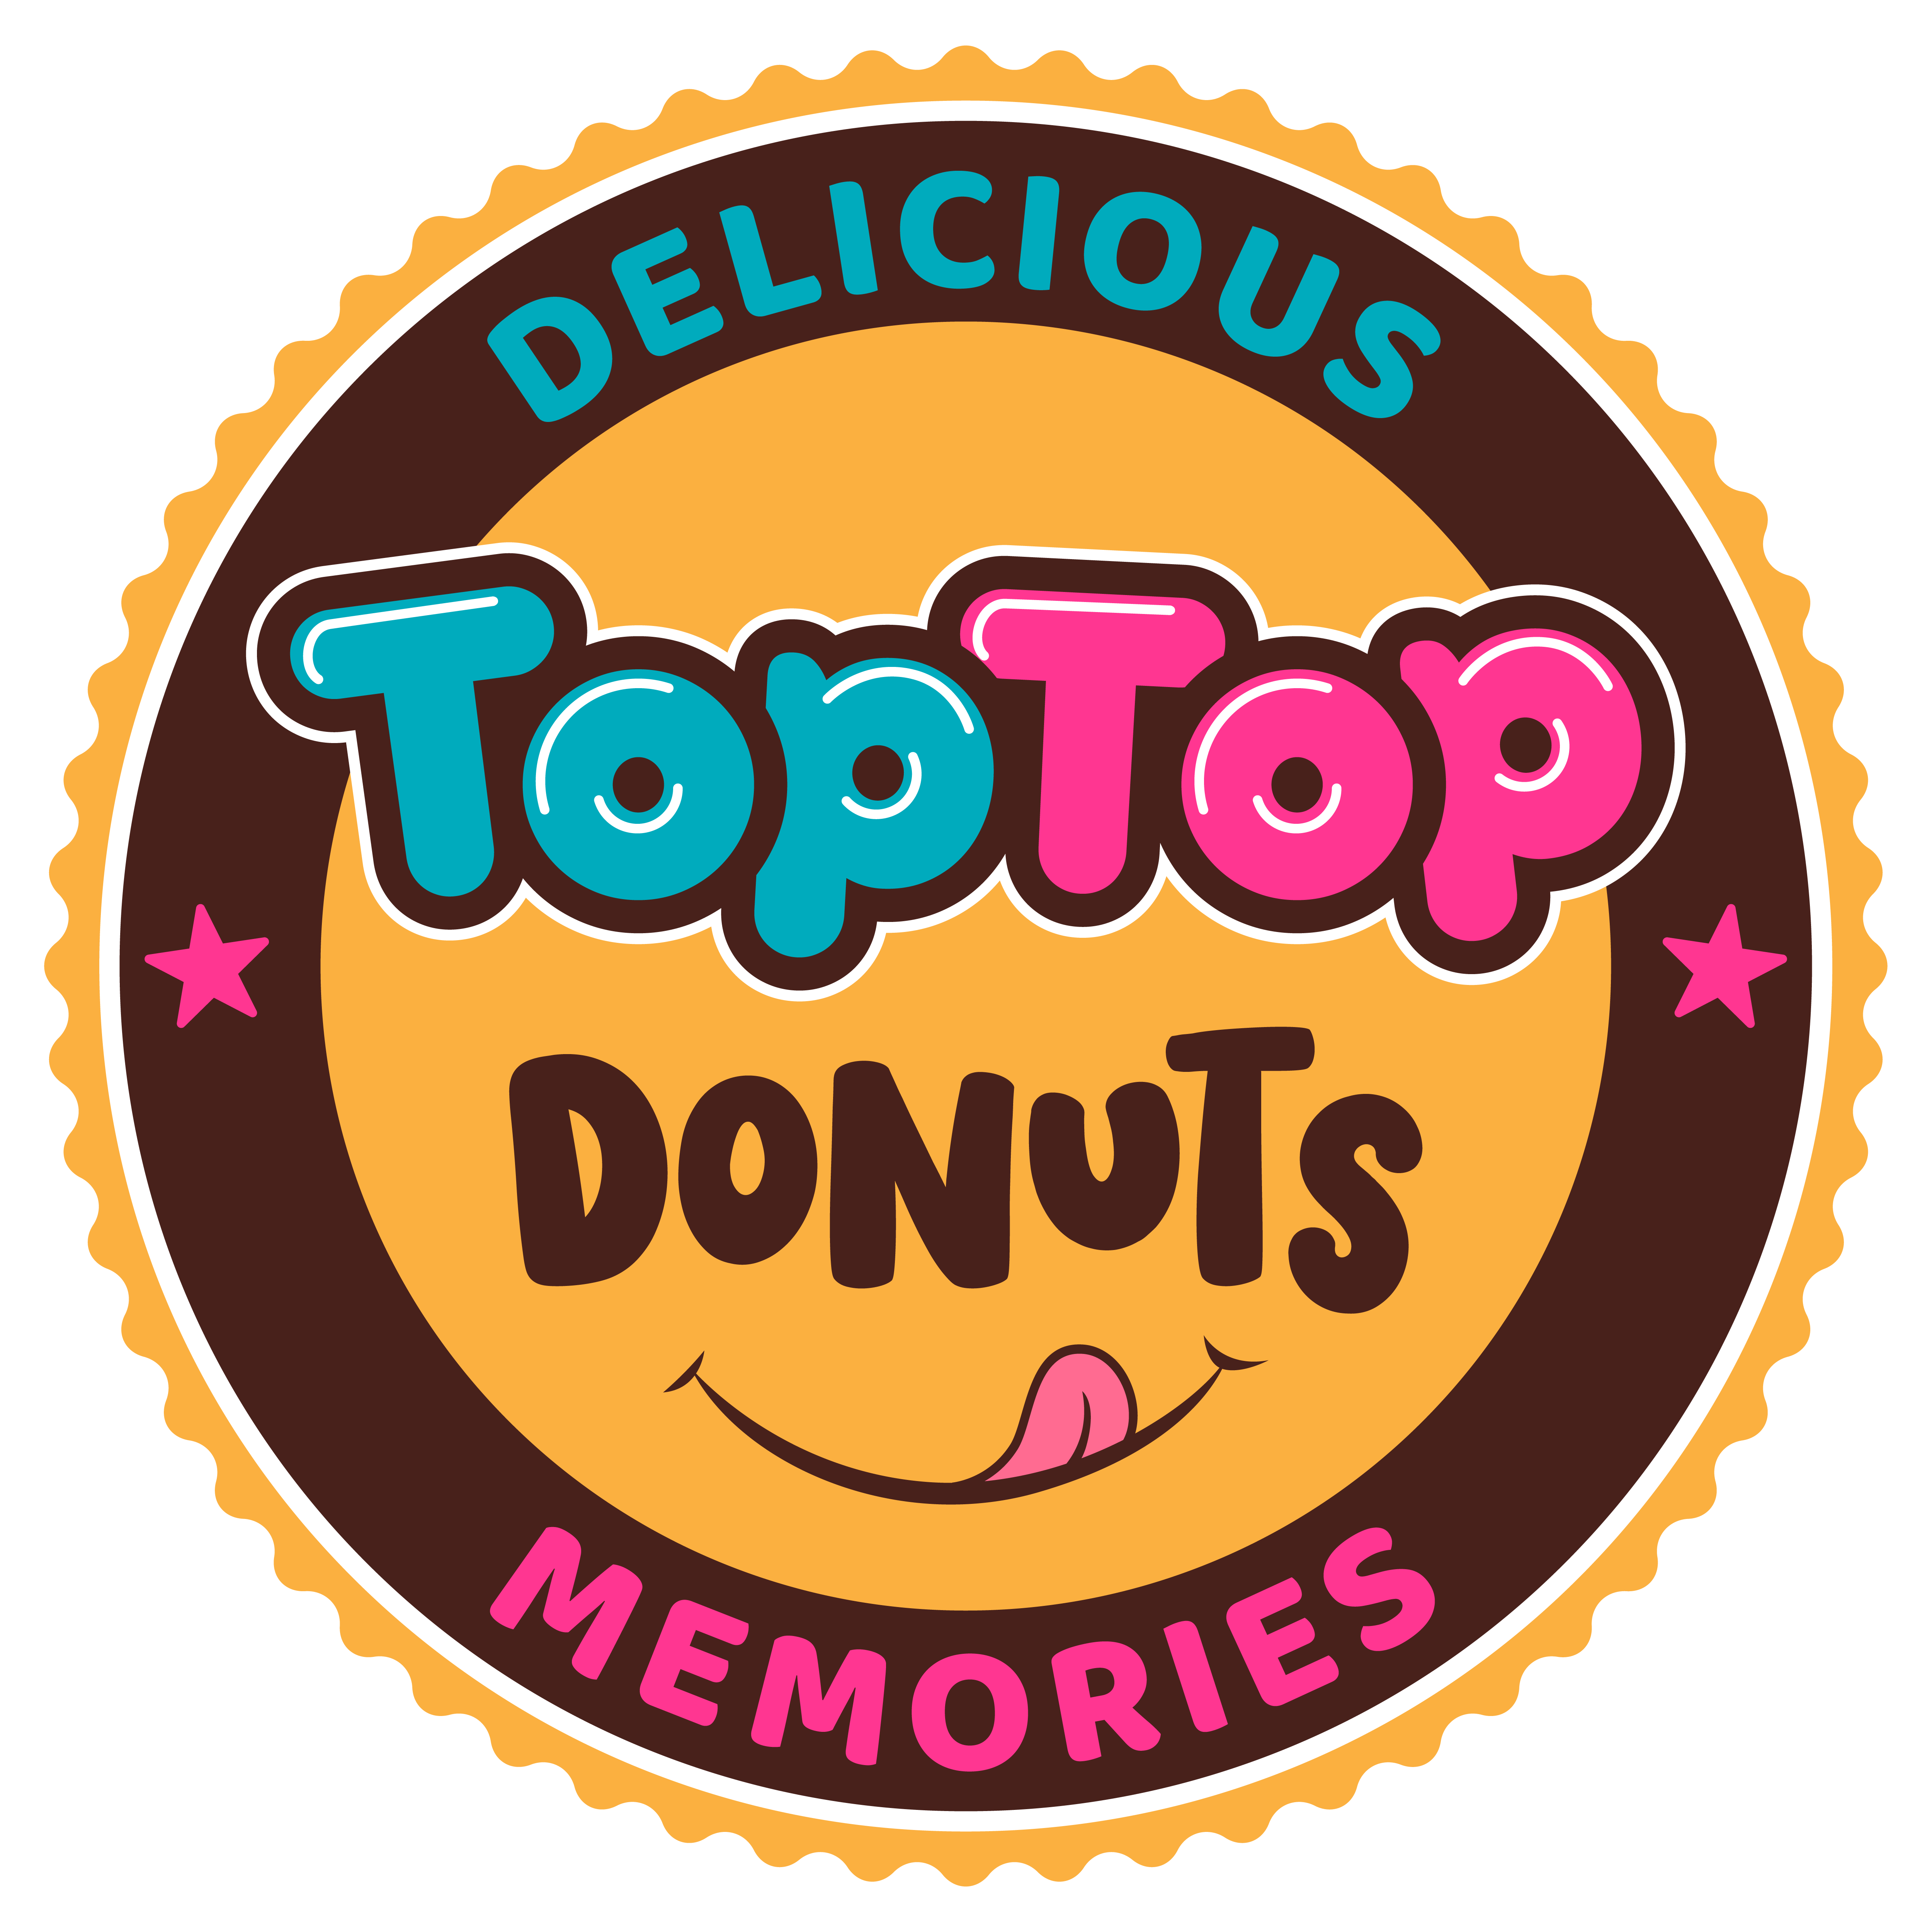 Logo des Unternehmens: TopTop Donuts in Düsseldorf